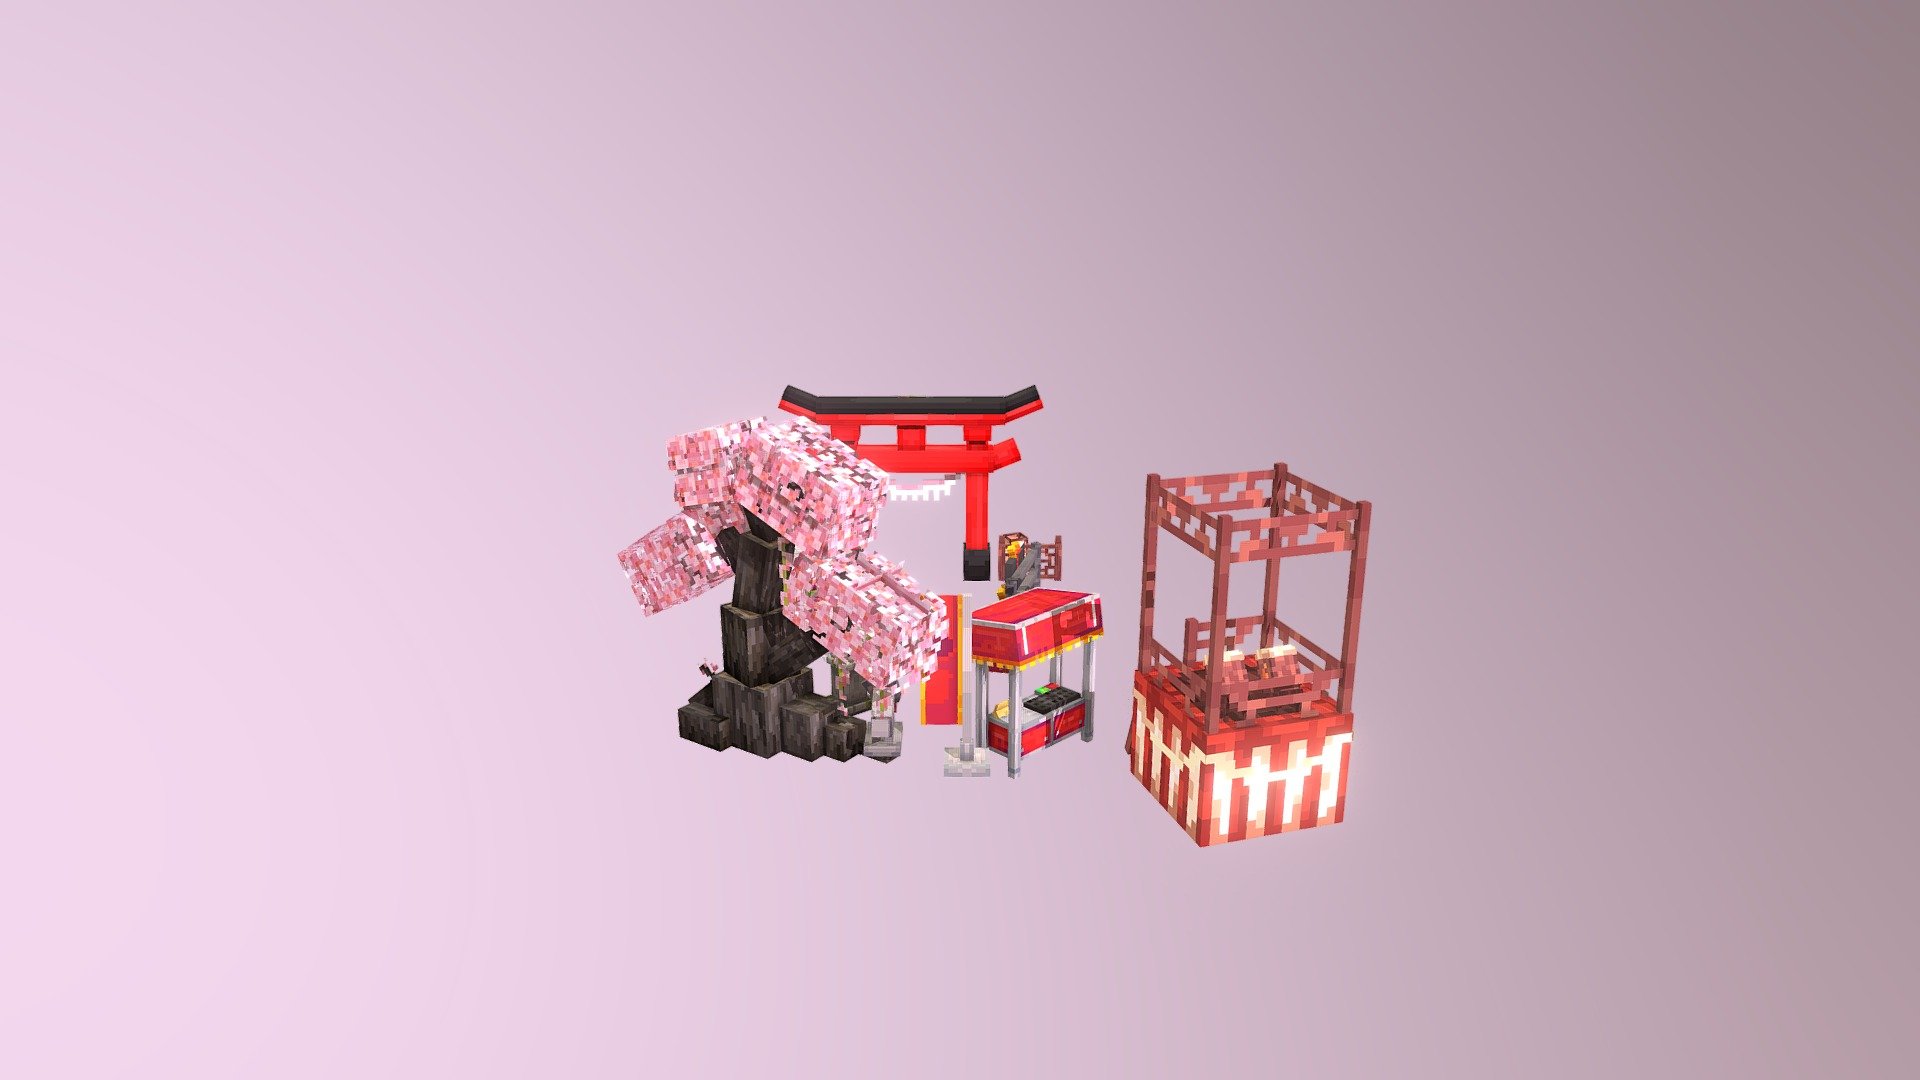 메갓-가면상, 노점상(두개), 현수막, 여우
보니-등불(두개), 울타리, 북, 단상
잡쵸-도리이, 벚나무, 석등

https://cafe.naver.com/minecraftgame/1868688 - Japanese festival - 3D model by Jabchyo 3d model